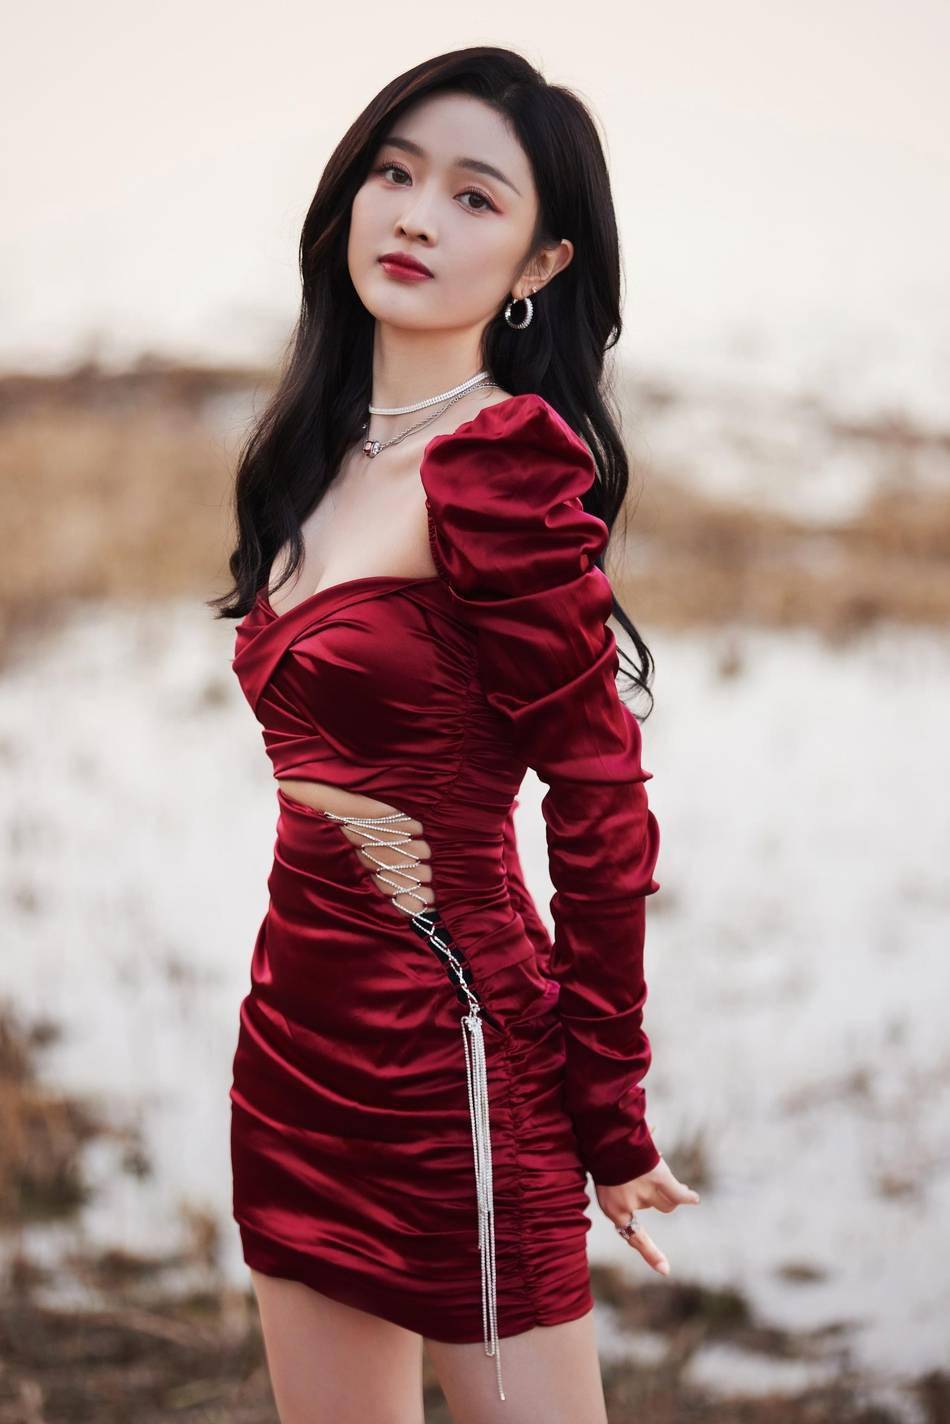 吴宣仪穿红绸缎礼裙秀身材光影洒落小露性感